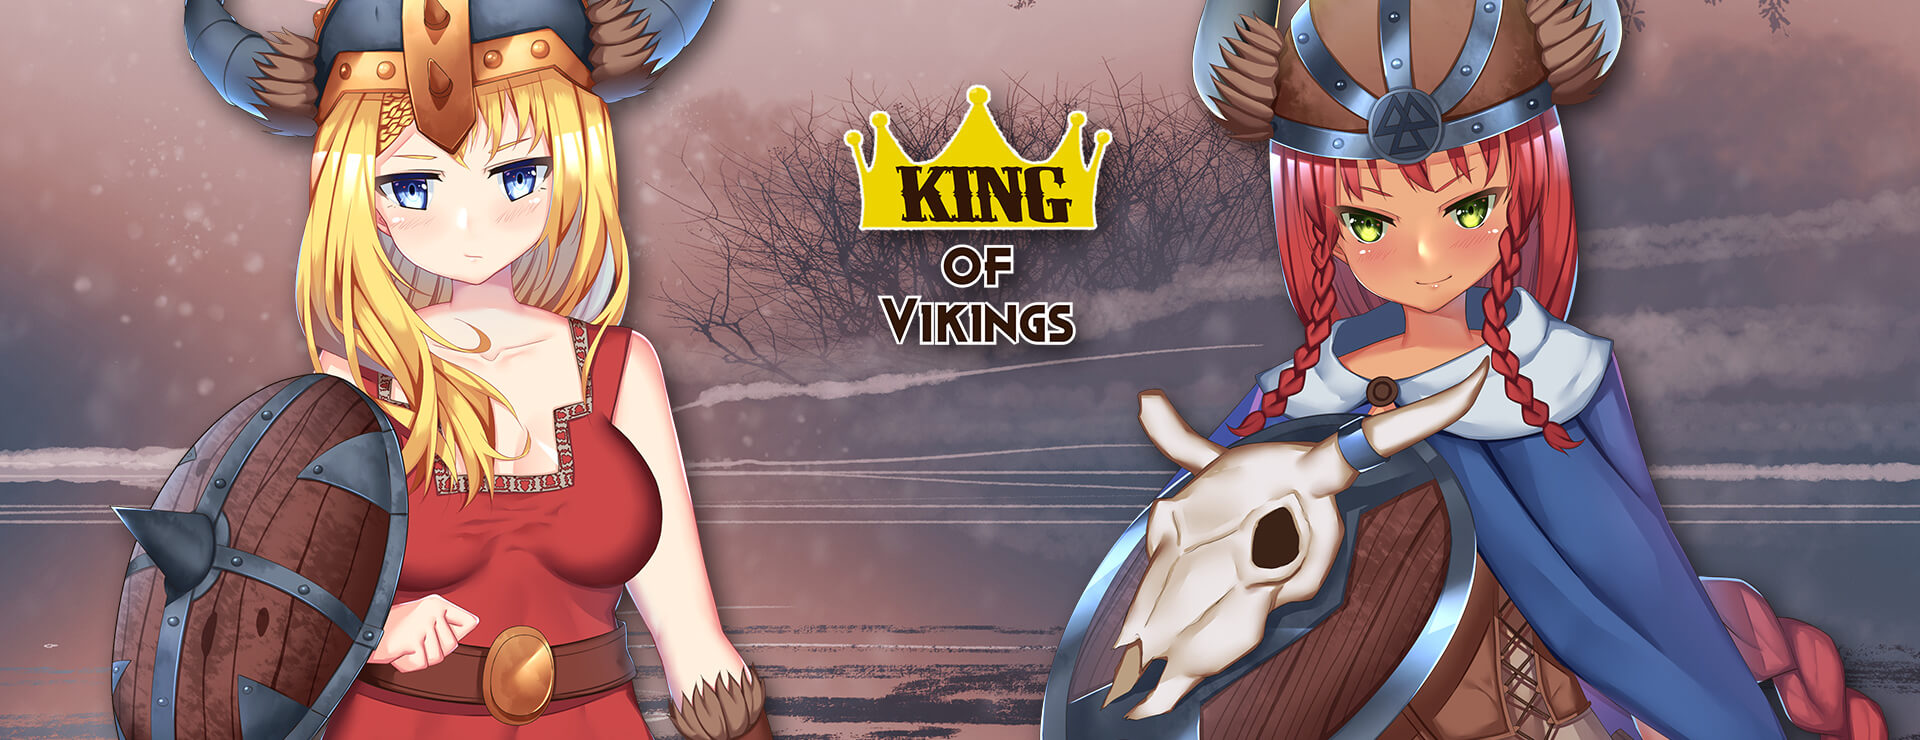 King of Vikings - 虚拟小说 遊戲